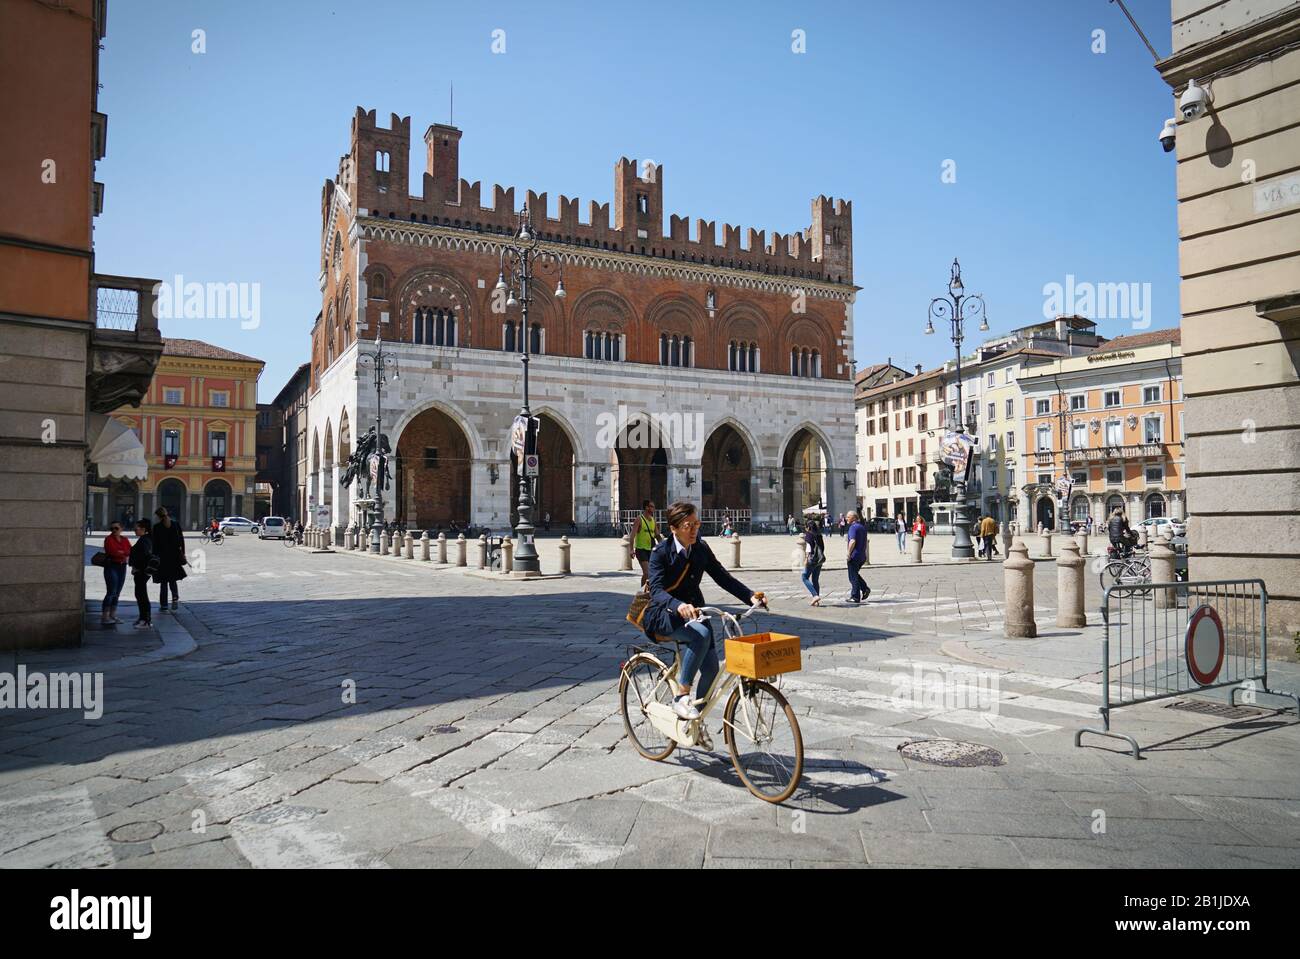 El centro histórico de Piacenza, sin coche, cuenta con numerosas bicicletas y peatones. Piacenza, Italia - abril 2019 Foto de stock